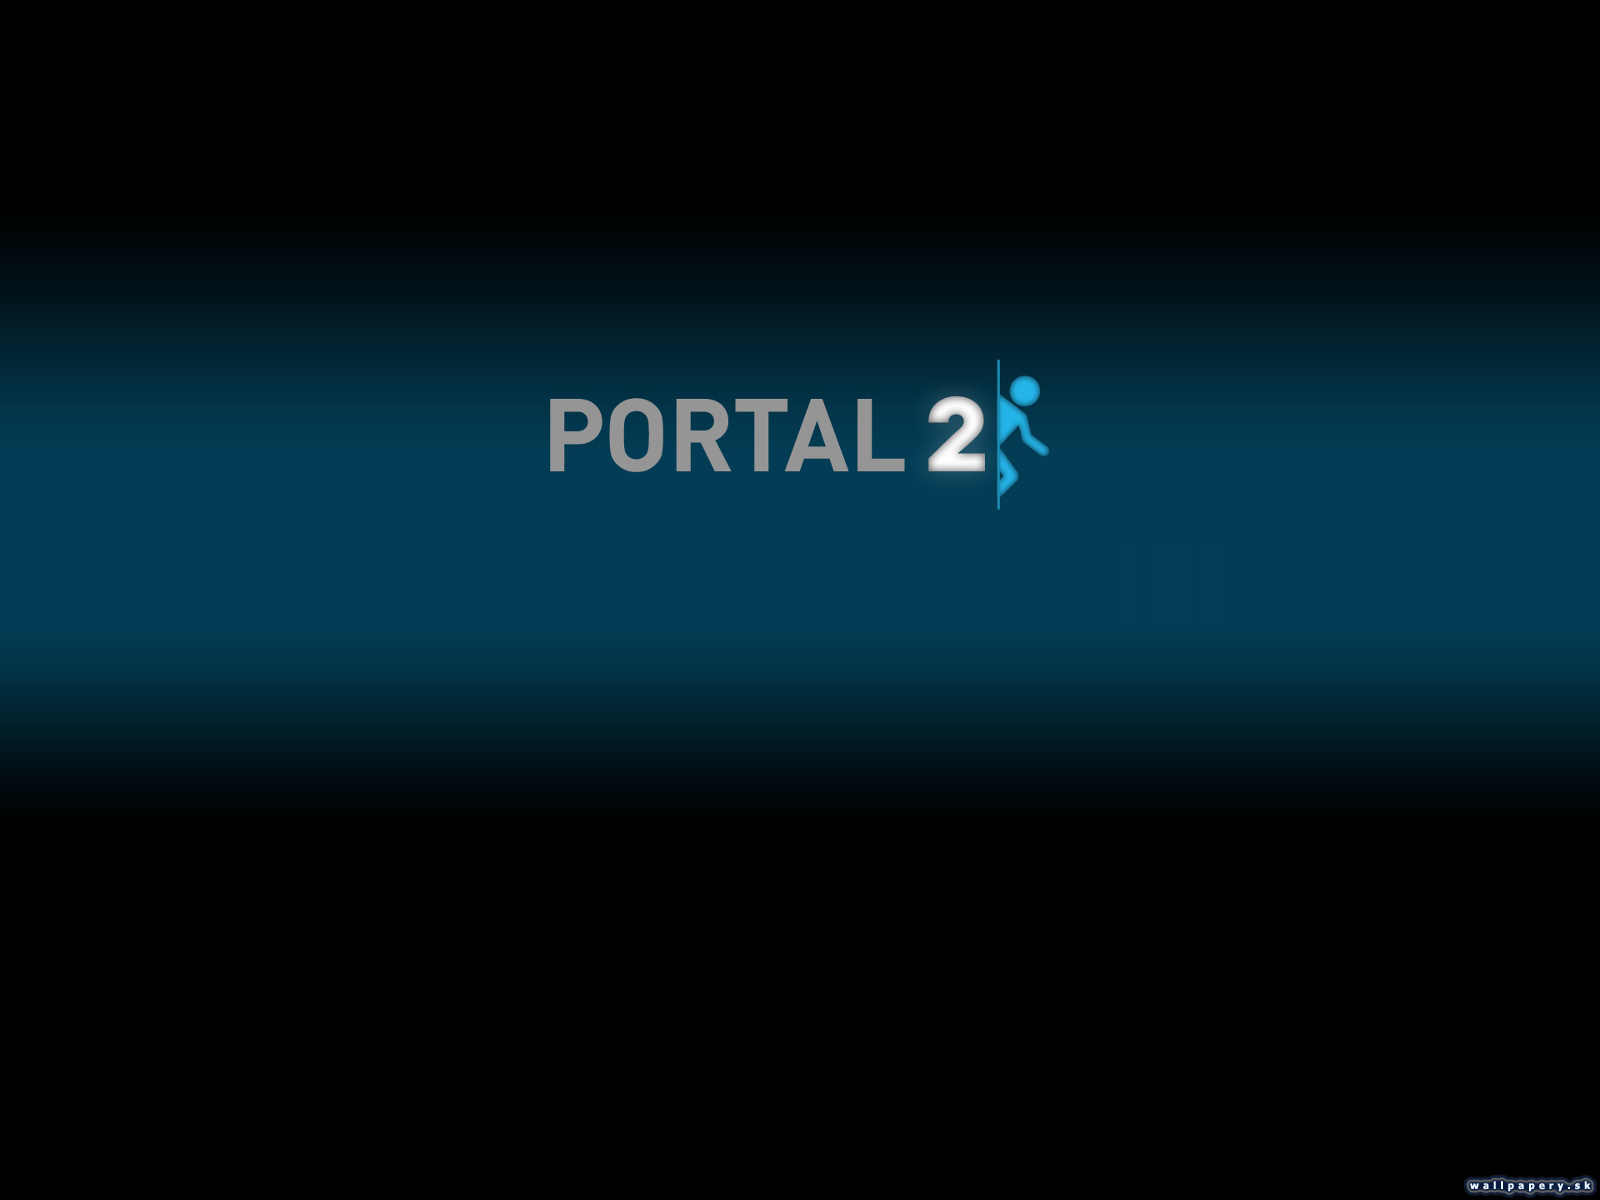 Portal 2 - wallpaper 1